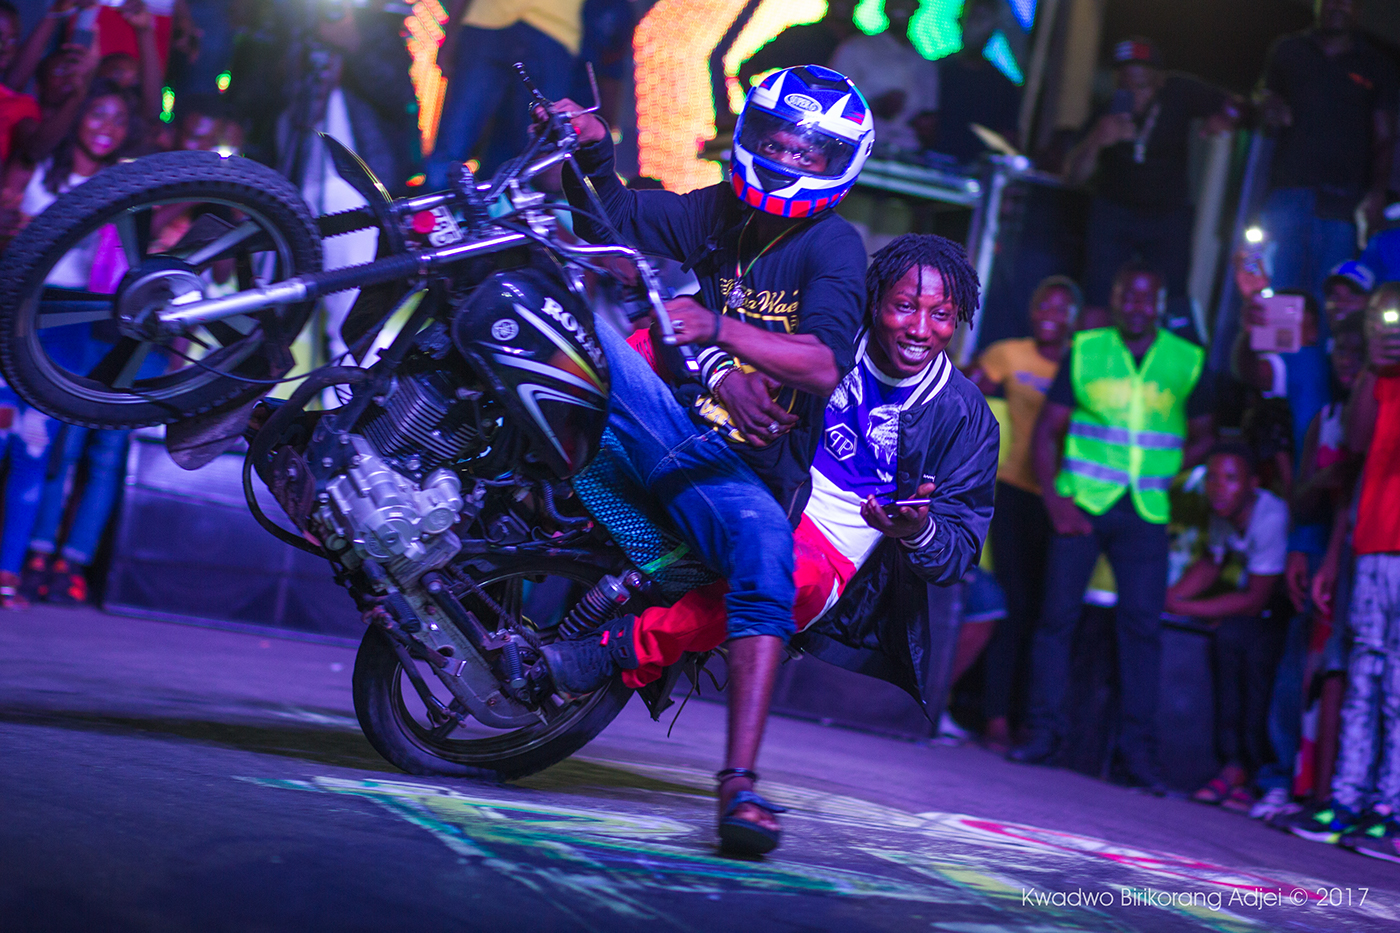 biker accra Ghana africa Honda stunts Bike Motor bike